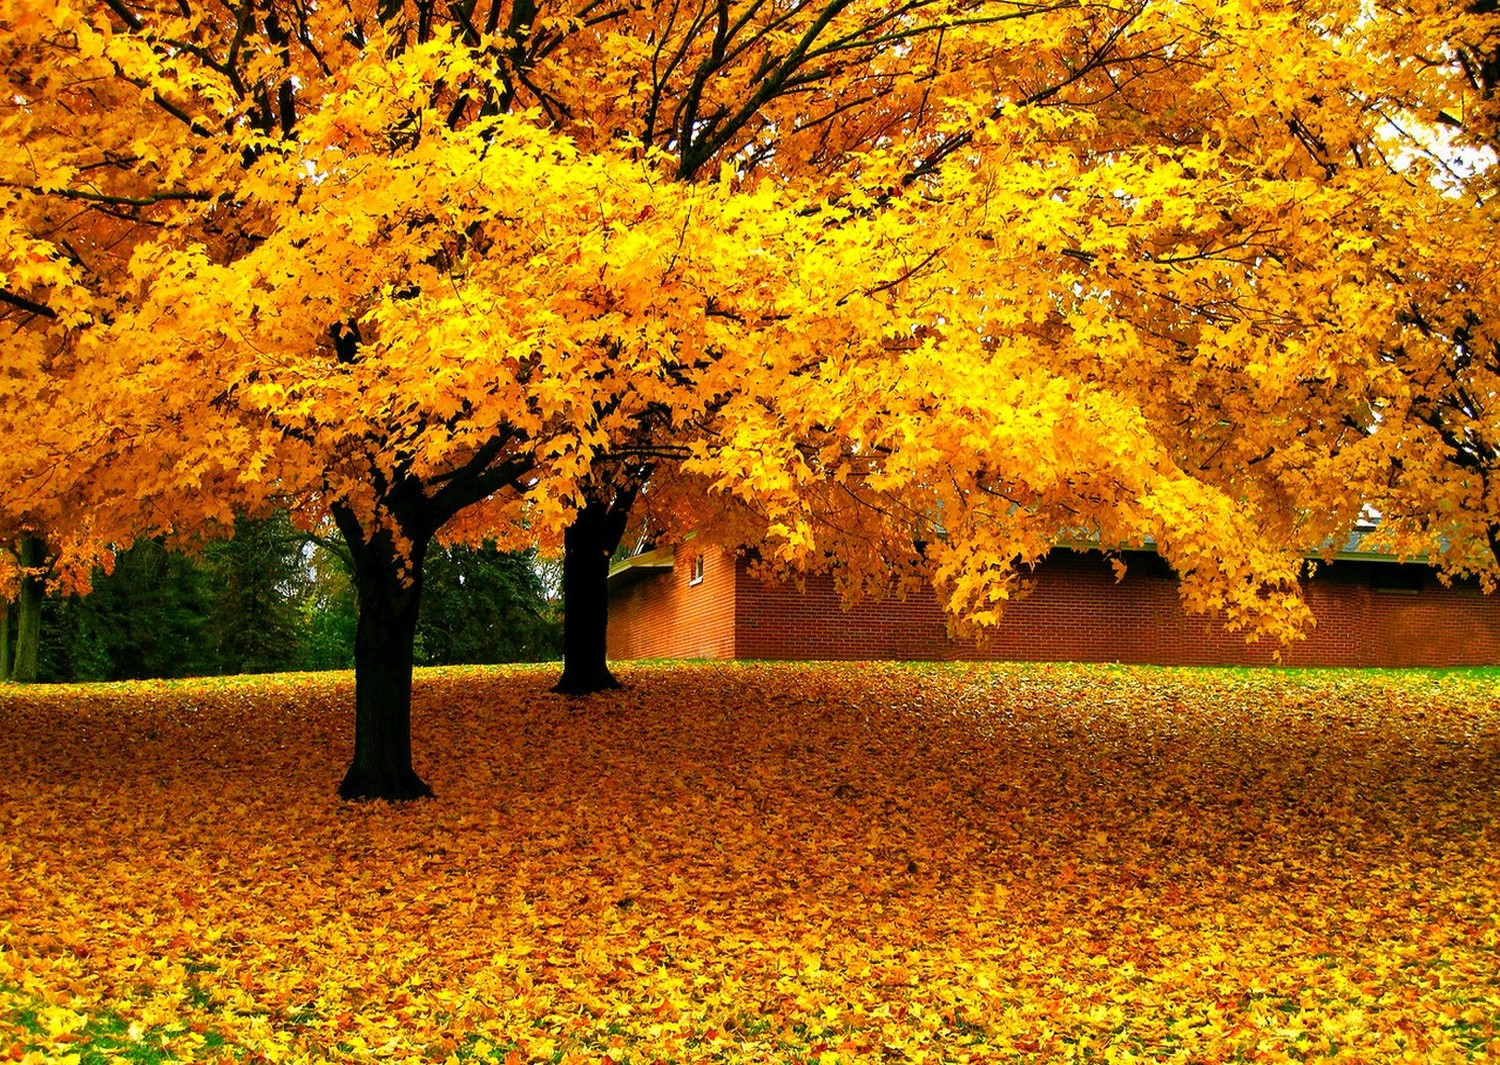 Bạn yêu thích những khung cảnh mùa thu với những chiếc lá vàng rực rỡ, những cành cây thật tươi đẹp và những ngôi nhà thân yêu ngàn năm có một? Cùng khám phá một loạt những ảnh phong cảnh thiên nhiên tuyệt đẹp này và để cho tâm trí bạn được thư giãn hoàn toàn.